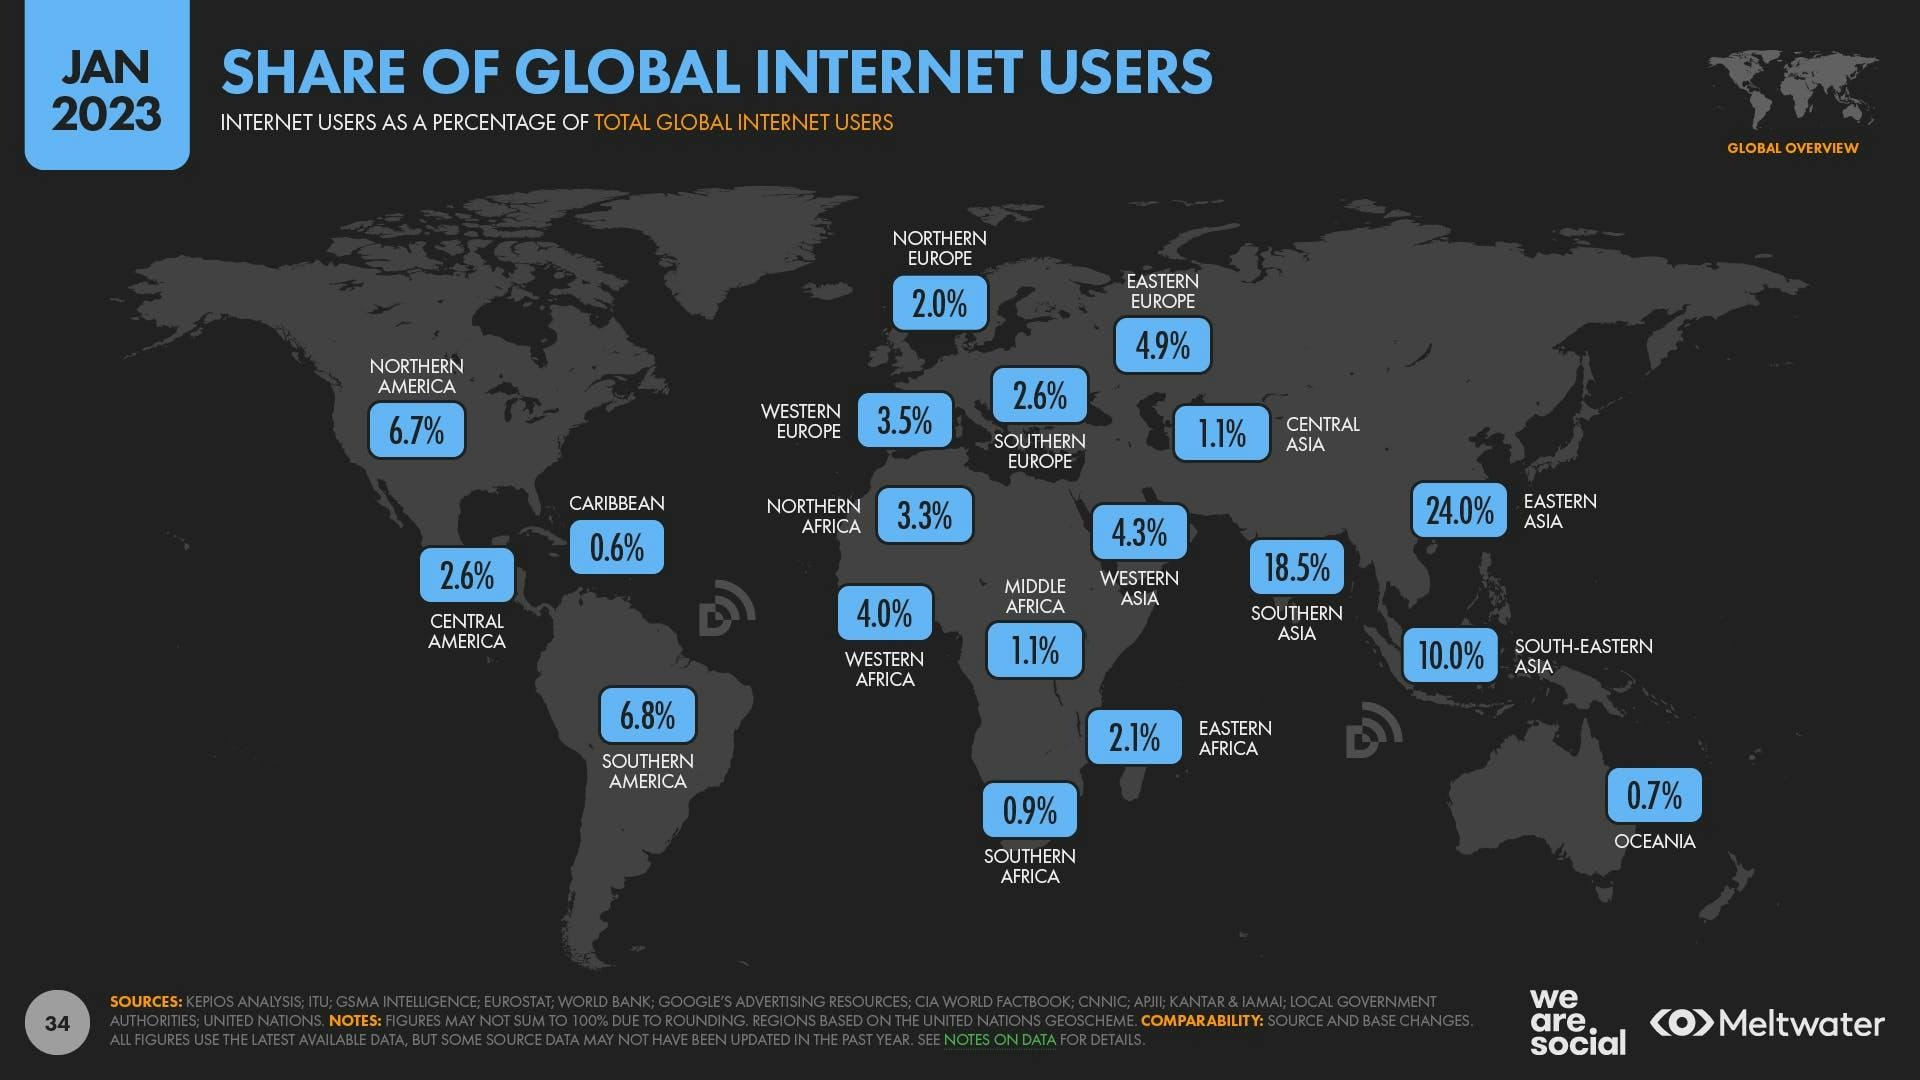 Globaali jako internetin käyttäjistä raportissa.